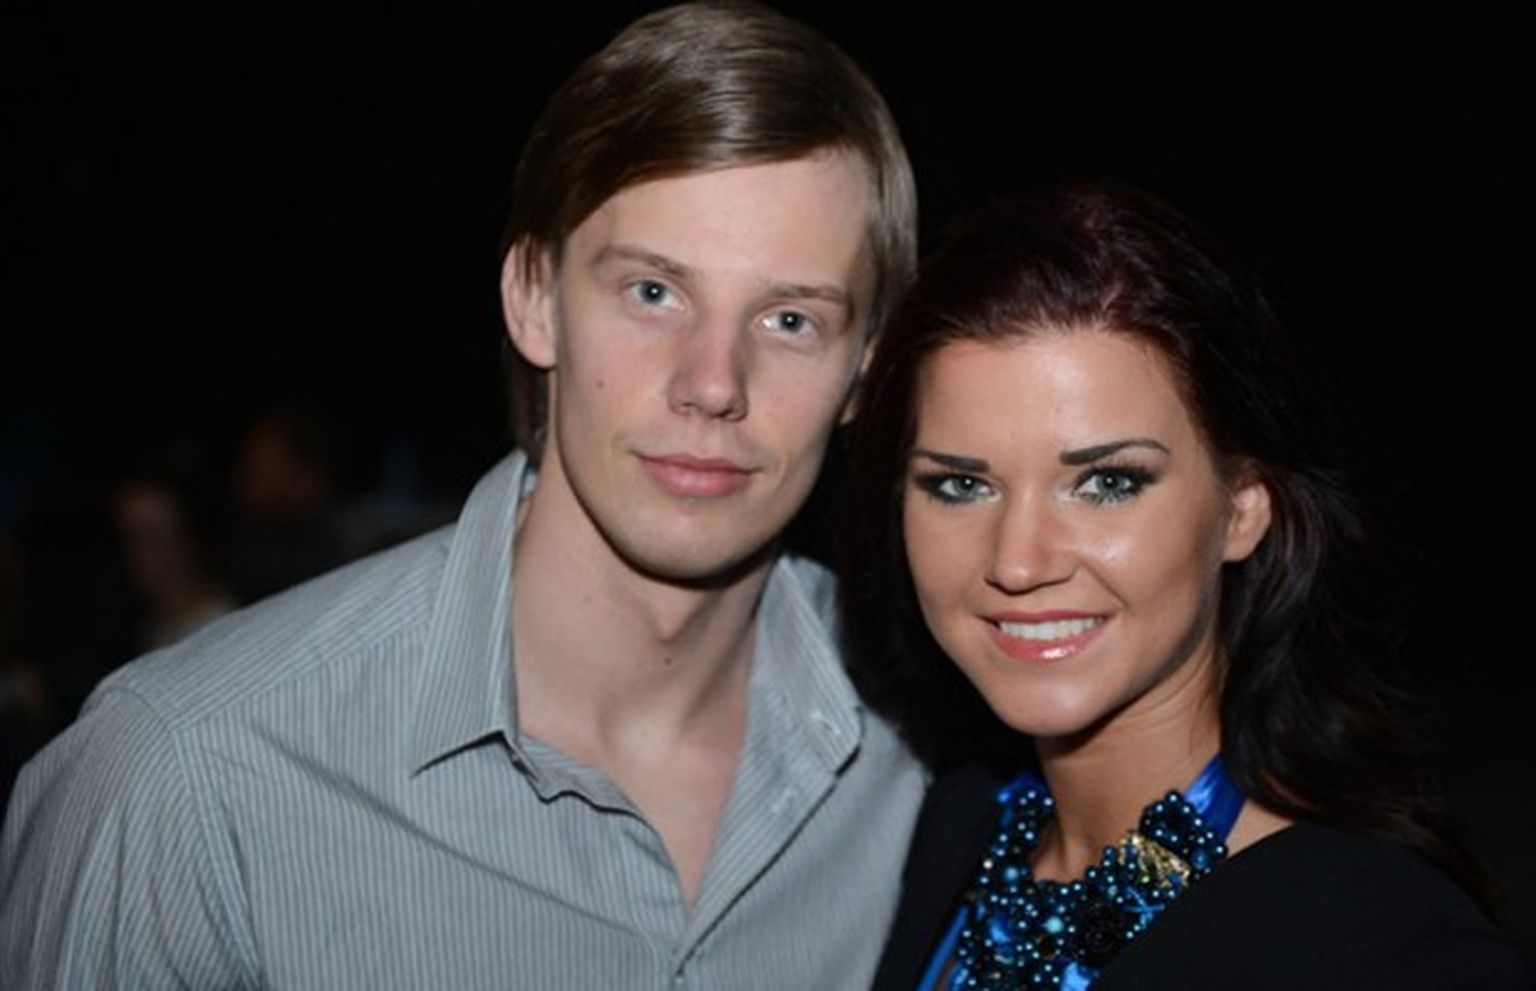 Viņi abi piedalījās skaistumkonkursā "Mis un Misters Latvija" - Elīna Grundāne un Jānis Verners